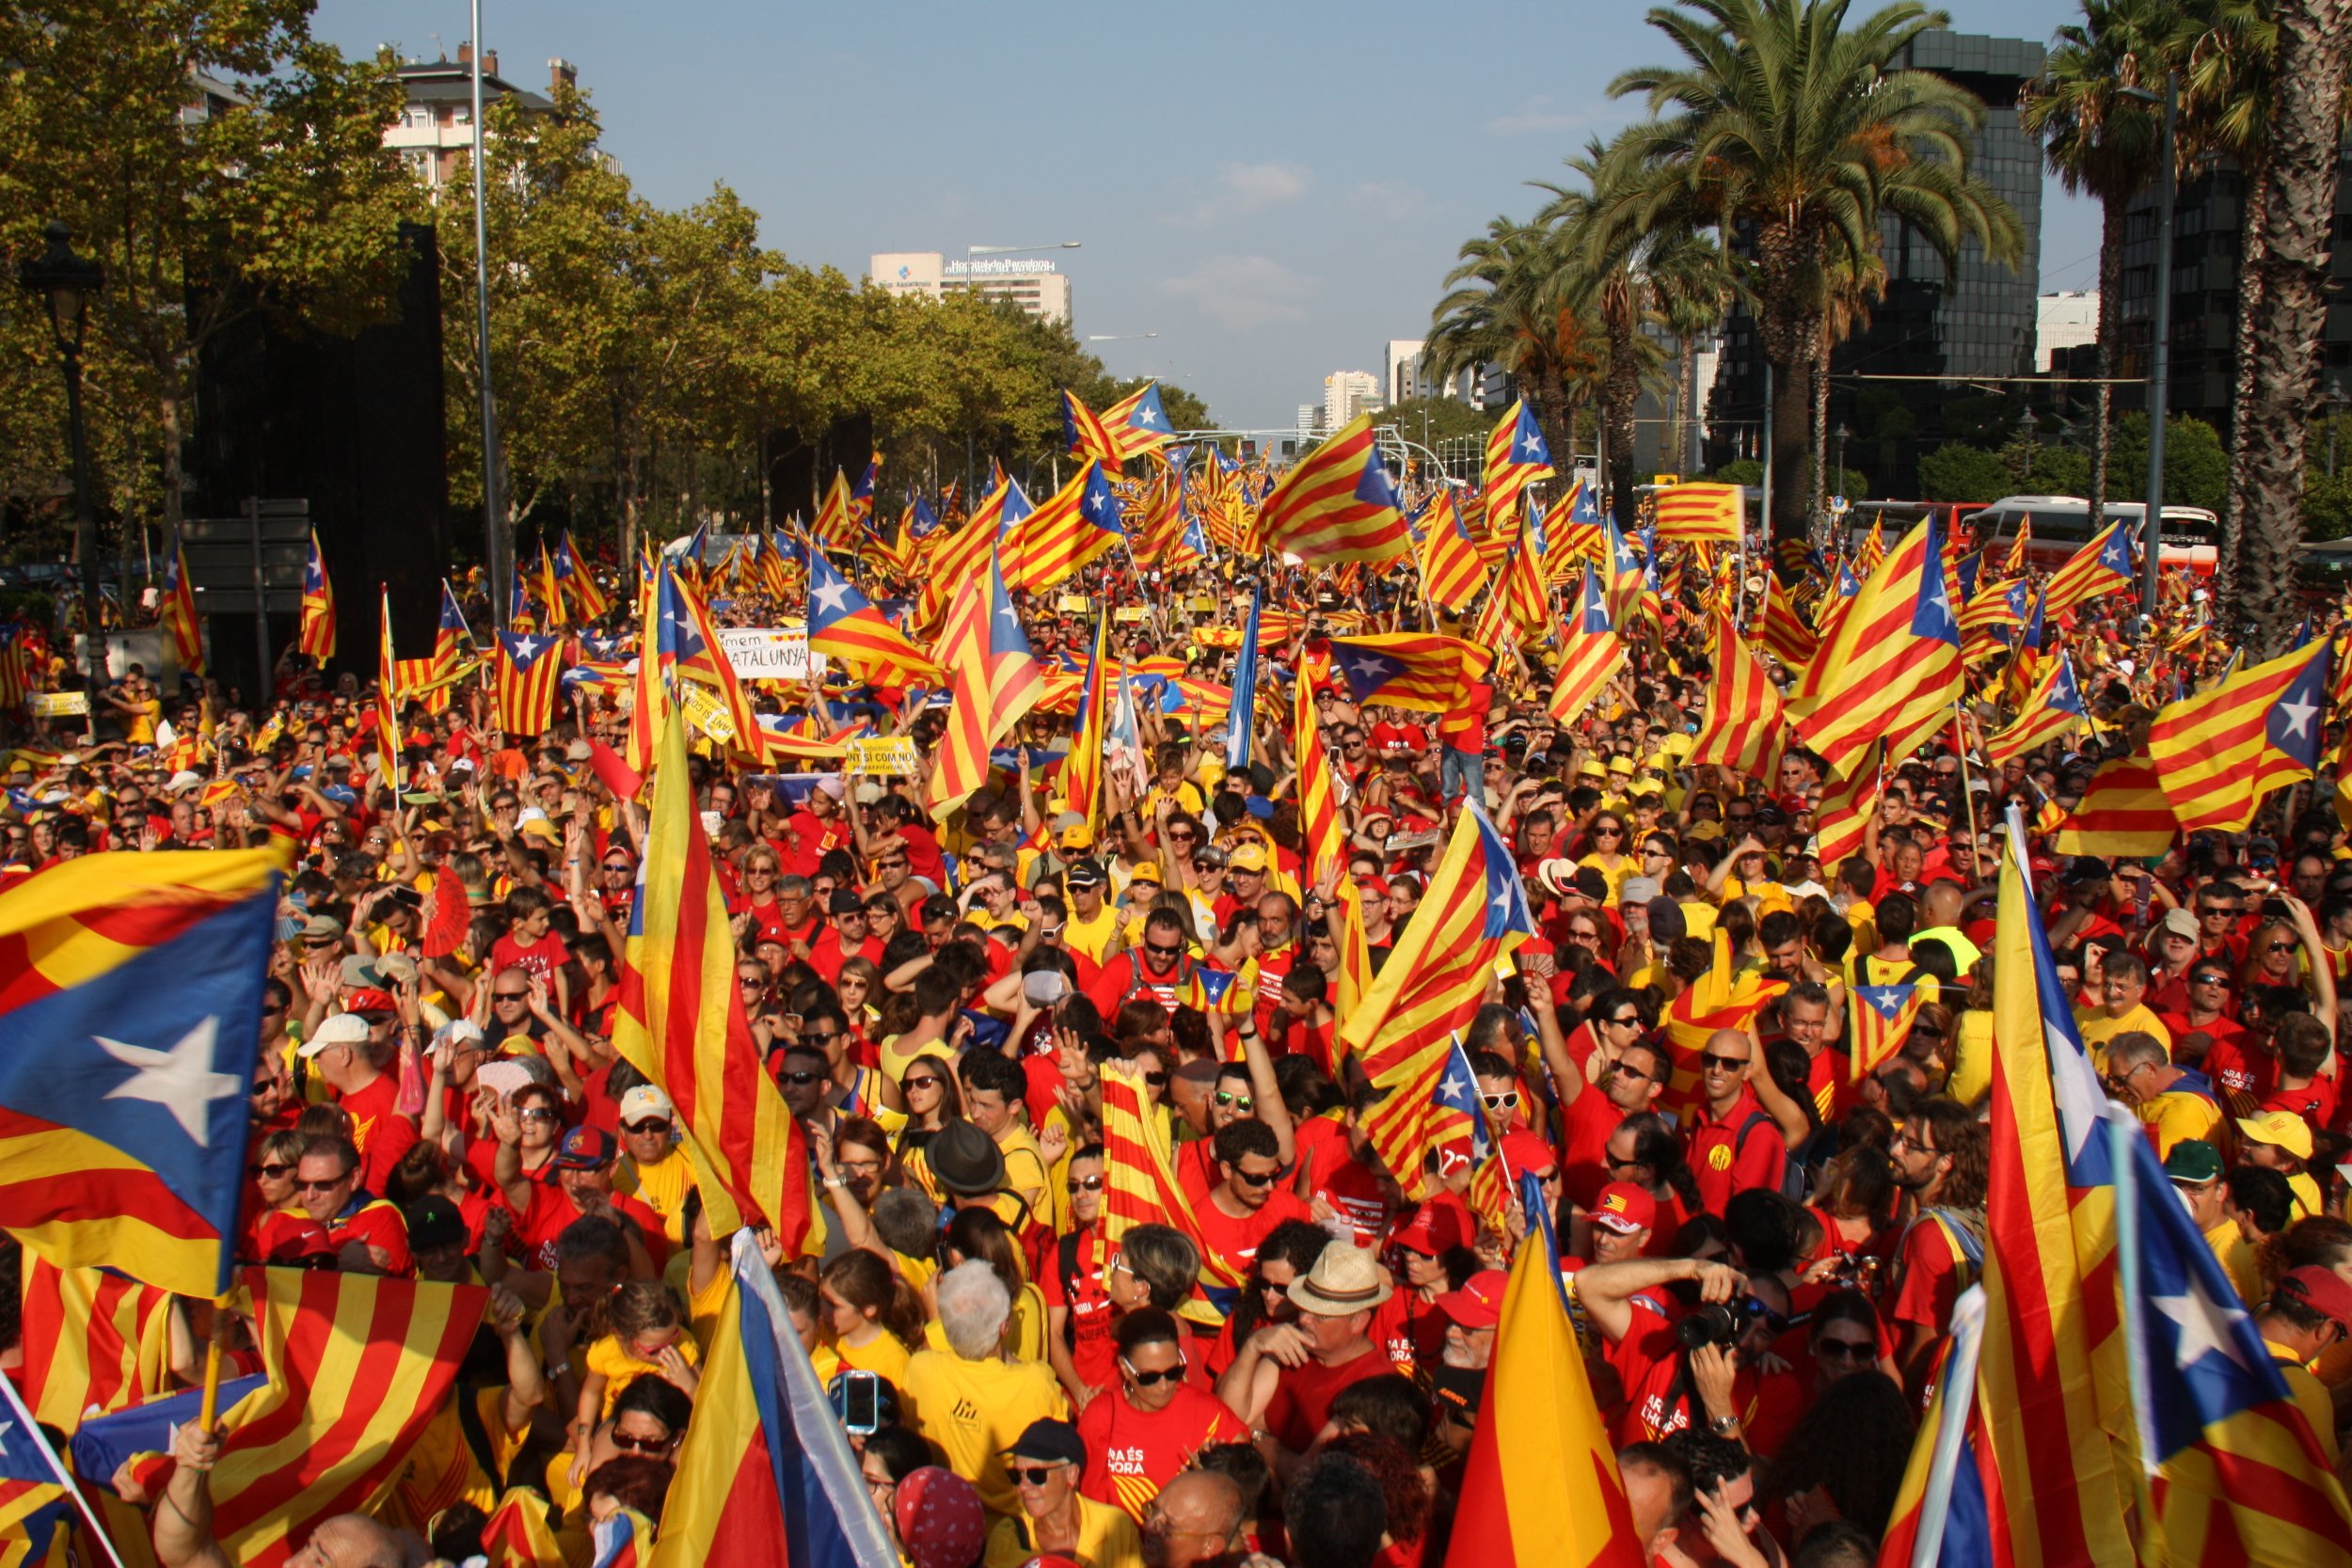 Una delle grandi manifestazioni indipendentiste in Catalogna nel 2017, a ridosso del referendum illegale che rischiò di spessare l'unità nazionale spagnola.